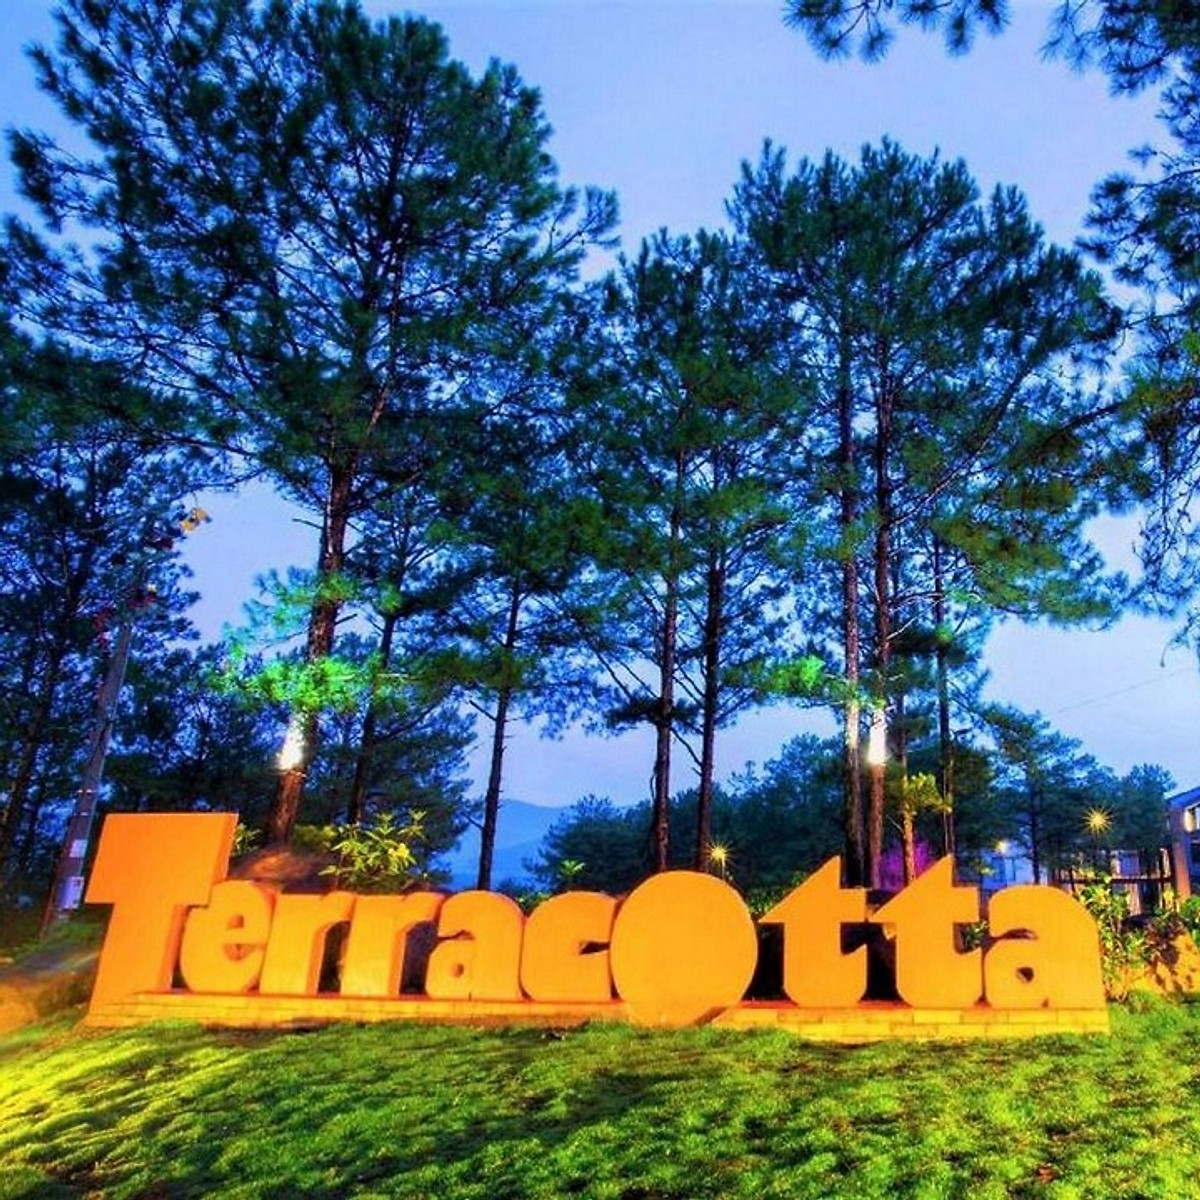 Terracotta Hotel & Resort 4* Đà Lạt - Buffet Sáng, Hồ Bơi, Xe Đưa Đón Trung Tâm, Nằm Bên Hồ Tuyền Lâm Thơ Mộng Và Nhiều Ưu Đãi Hấp Dẫn